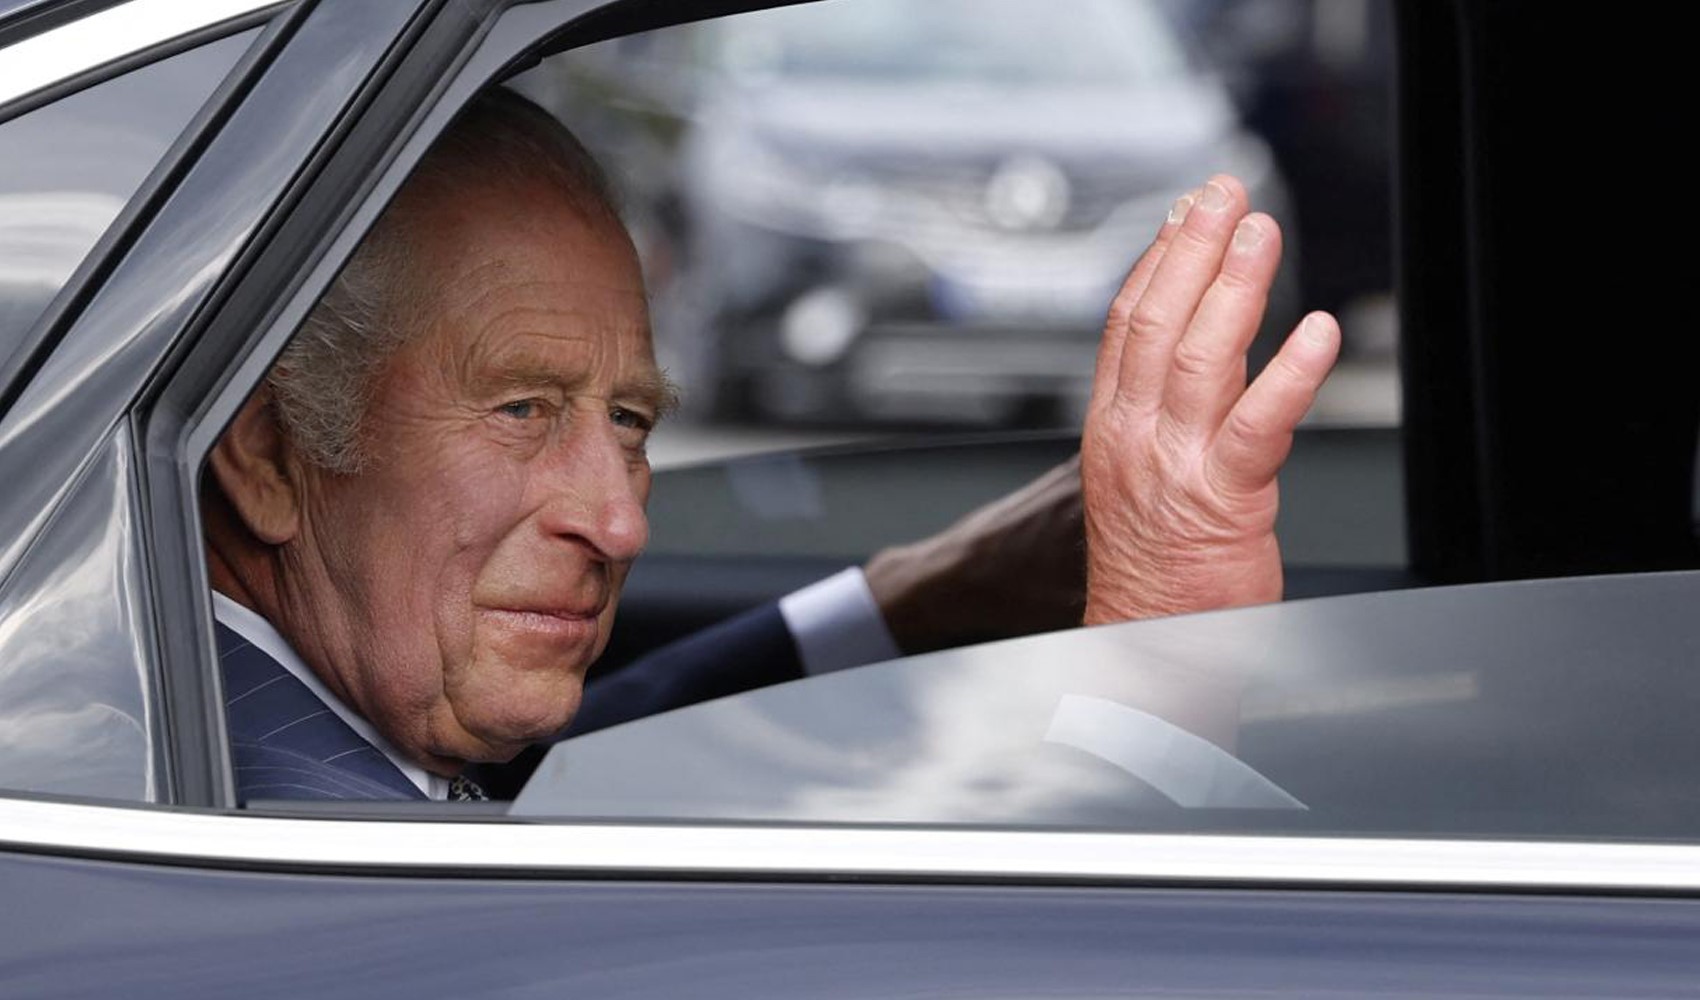 'Kral Charles'ın iki yıllık ömrü kaldı' iddiası